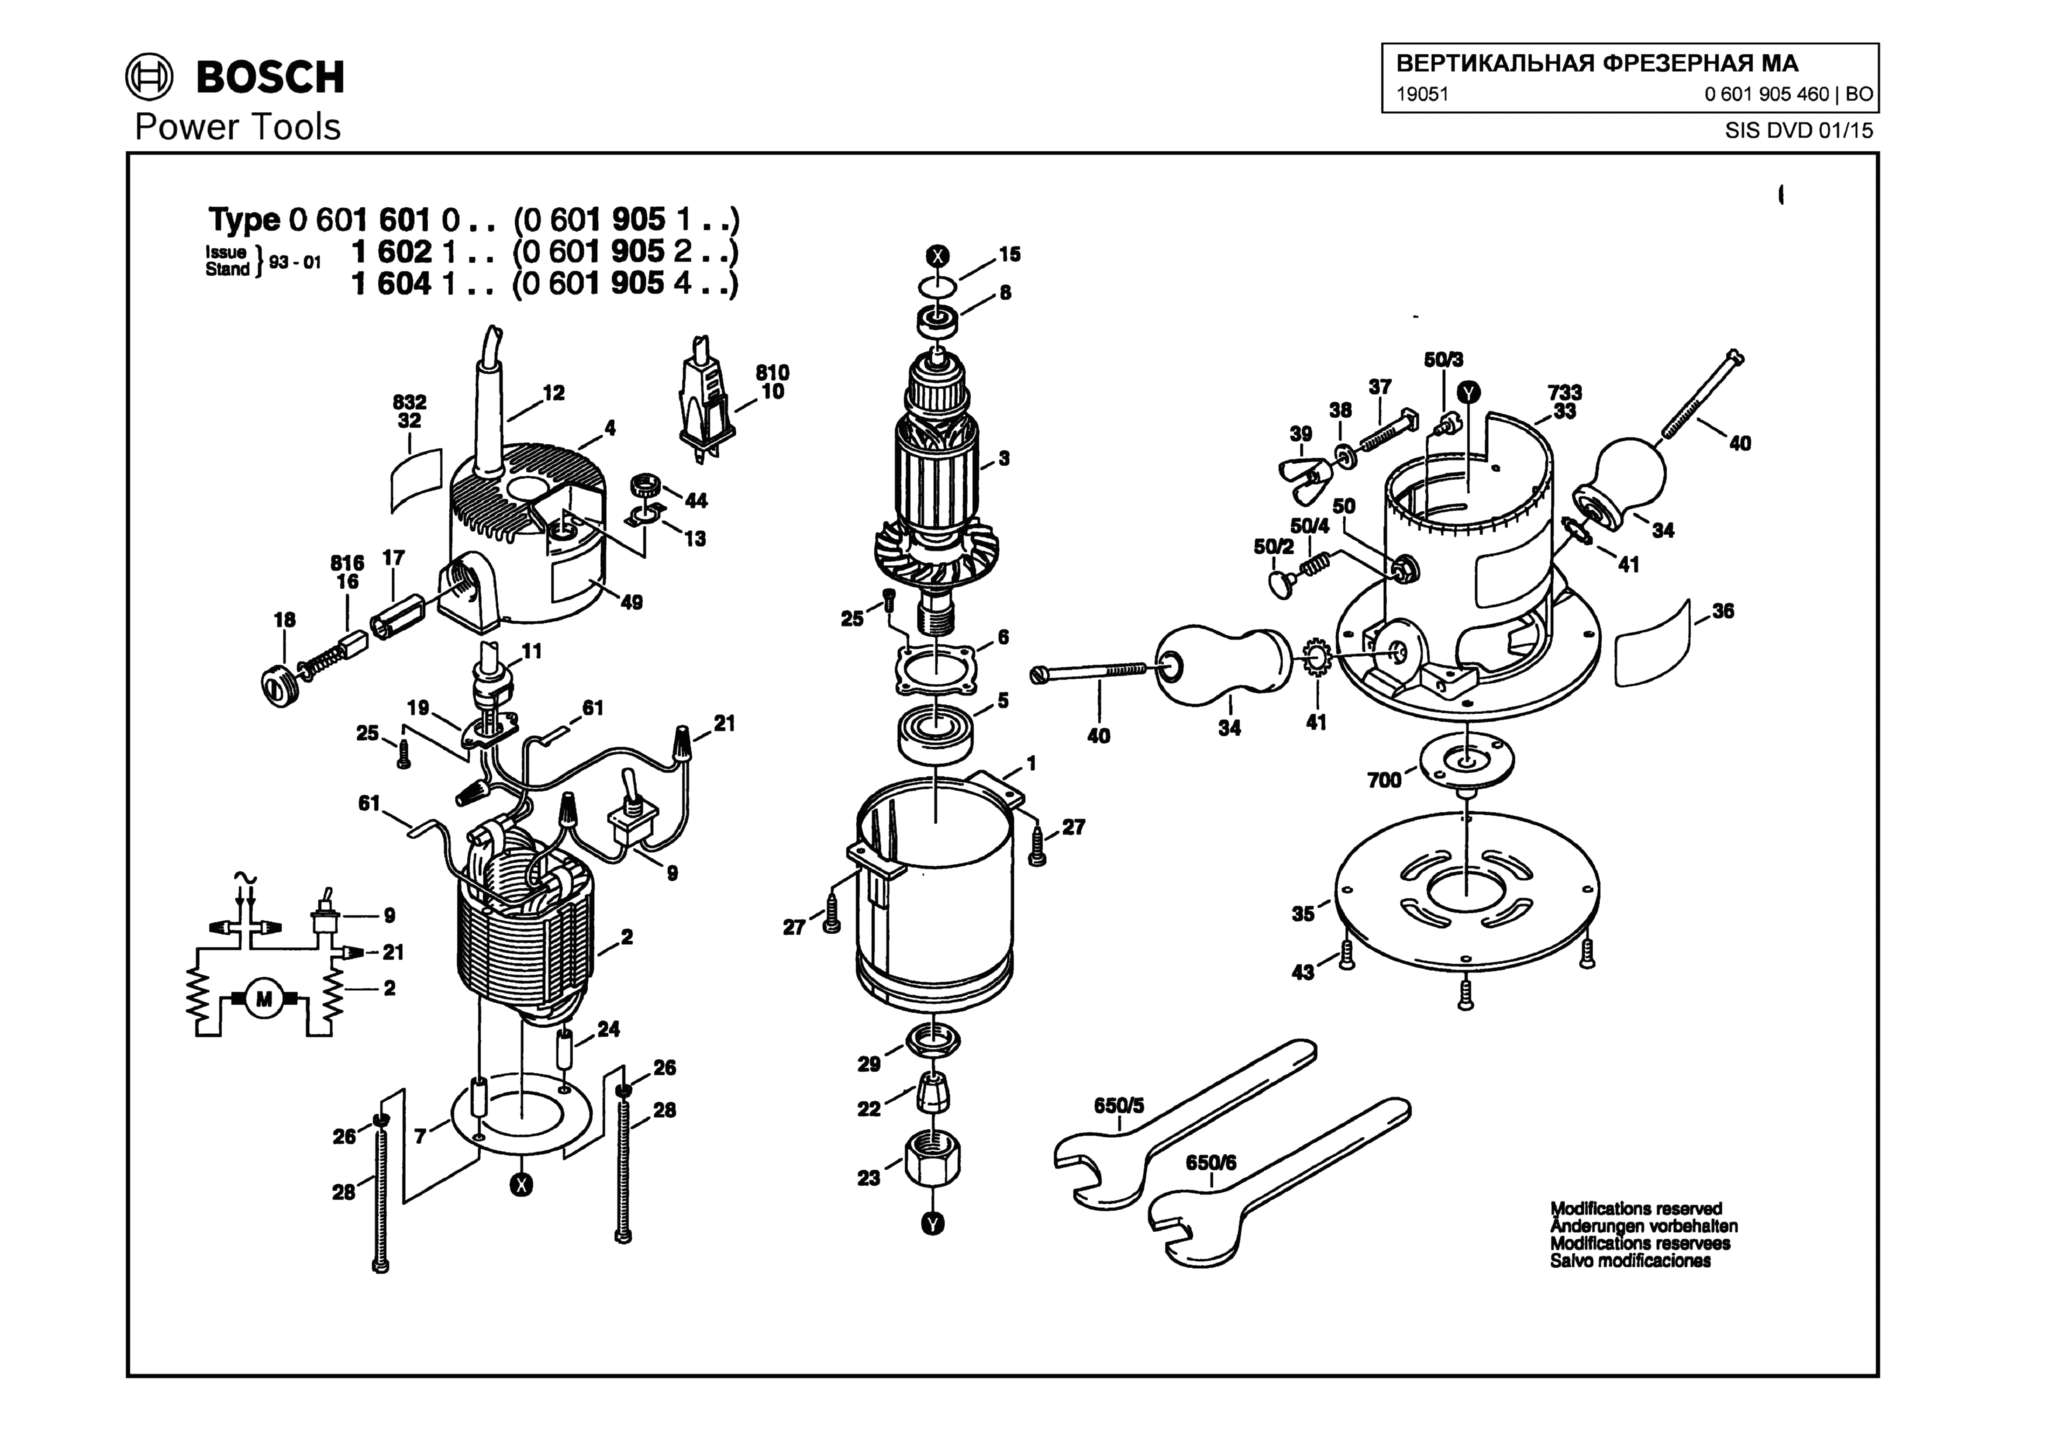 Запчасти, схема и деталировка Bosch 19051 (ТИП 0601905460)